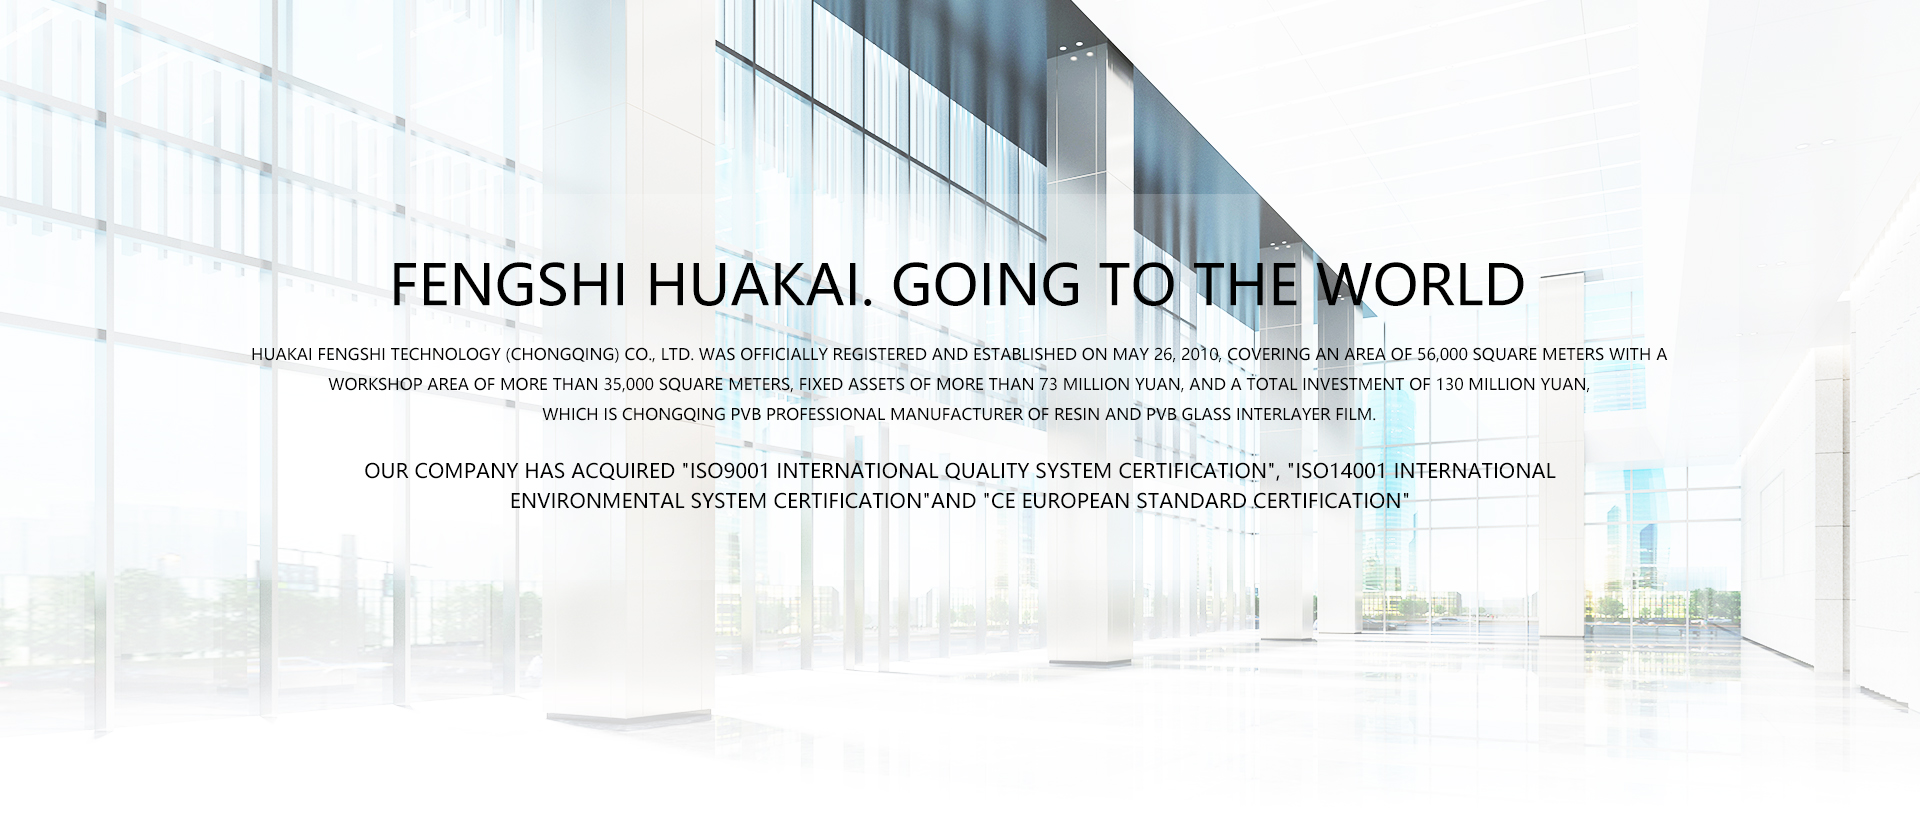 HUAKAI FENGSHI TECHNOLOGY (CHONGQING) CO., LTD.